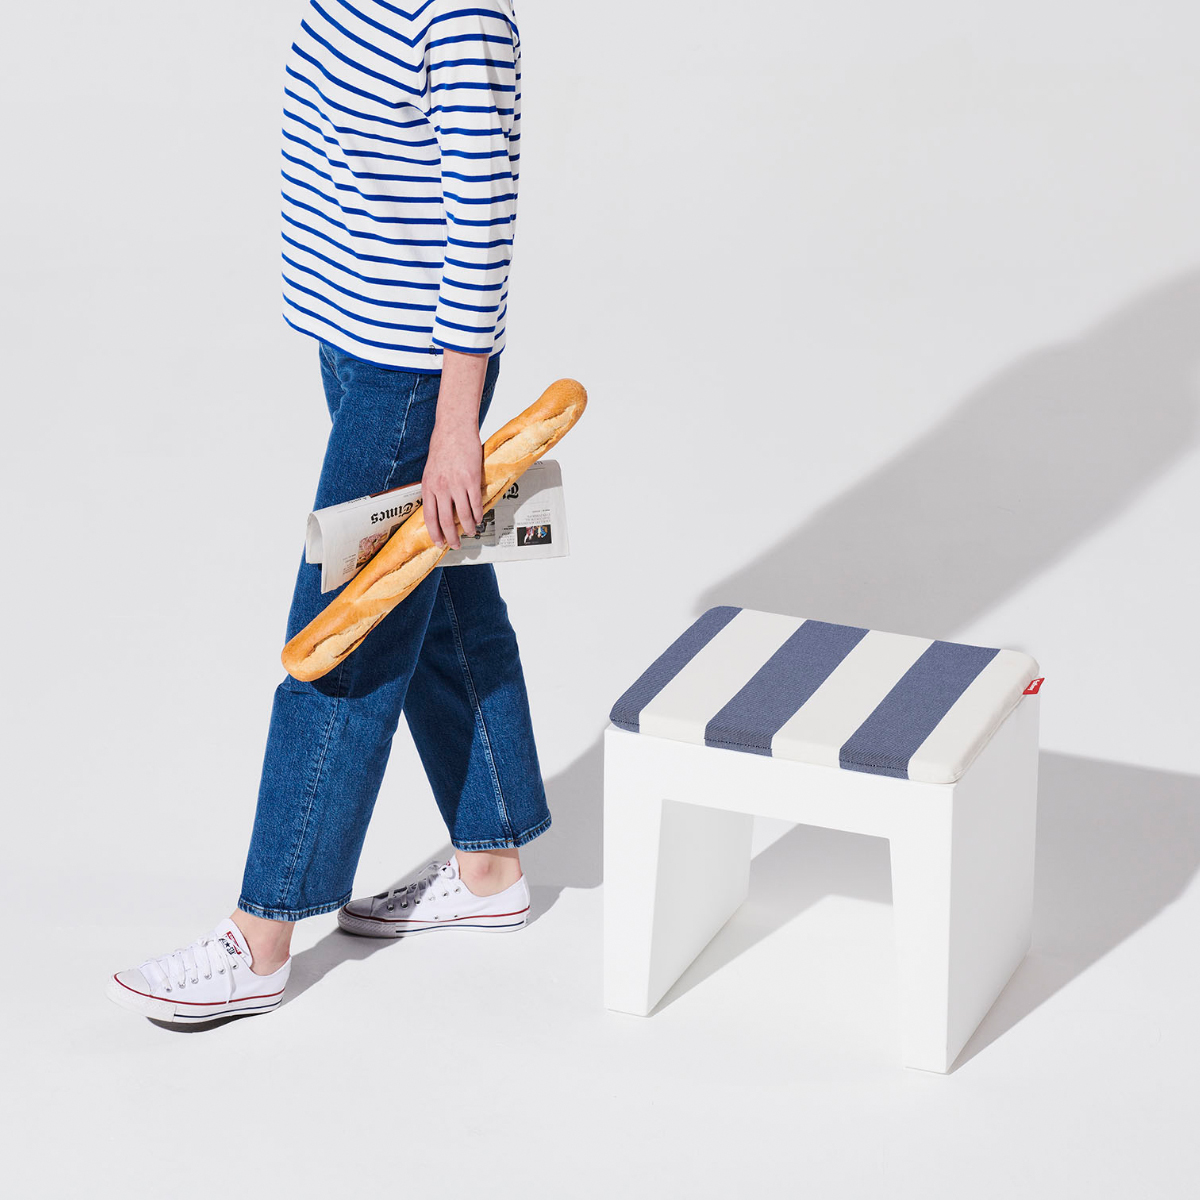 Concrete Seat: een multifunctioneel kunststof design krukje |